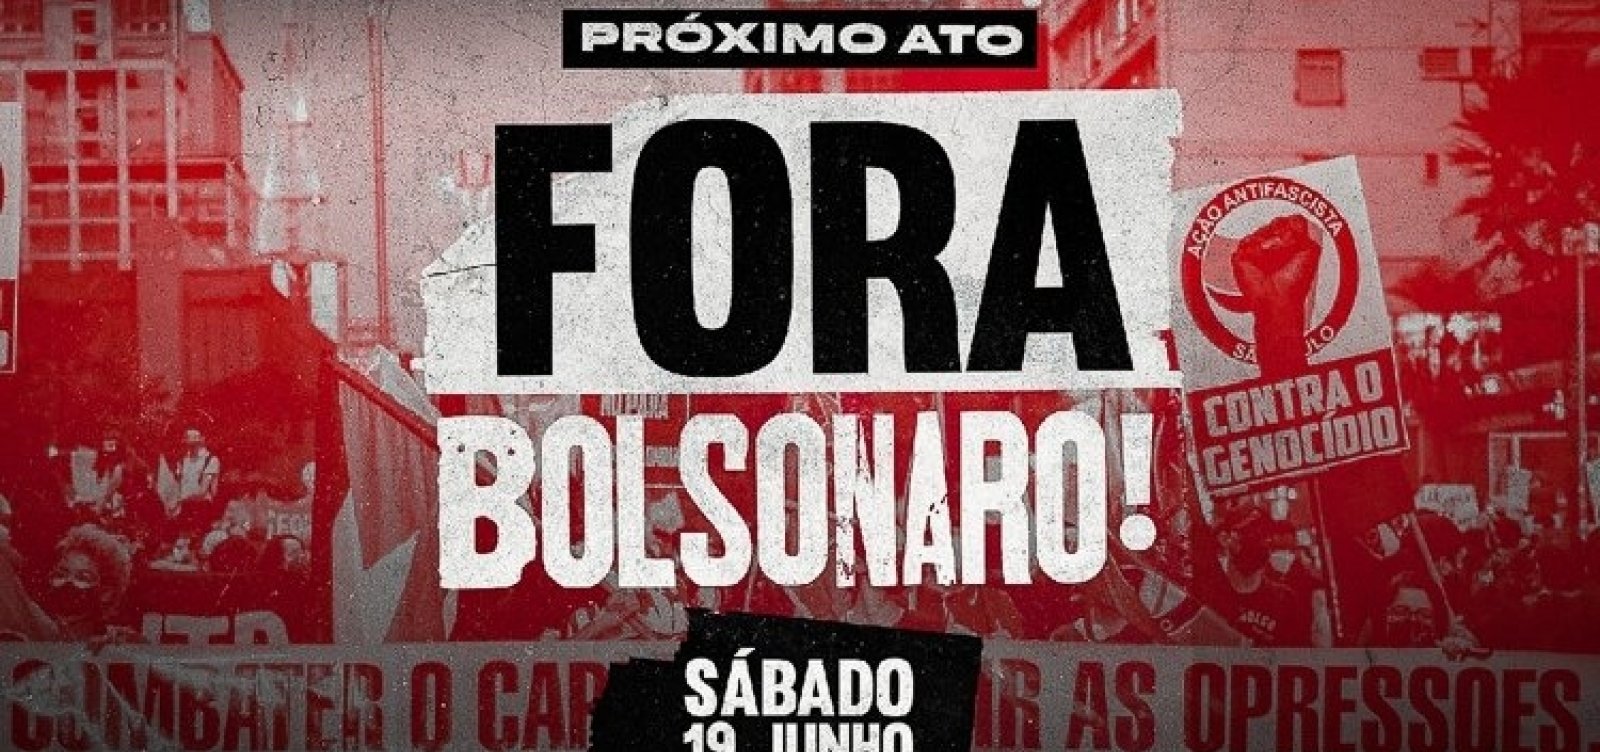 Sete cidades da Bahia já confirmaram protestos contra Bolsonaro no próximo sábado